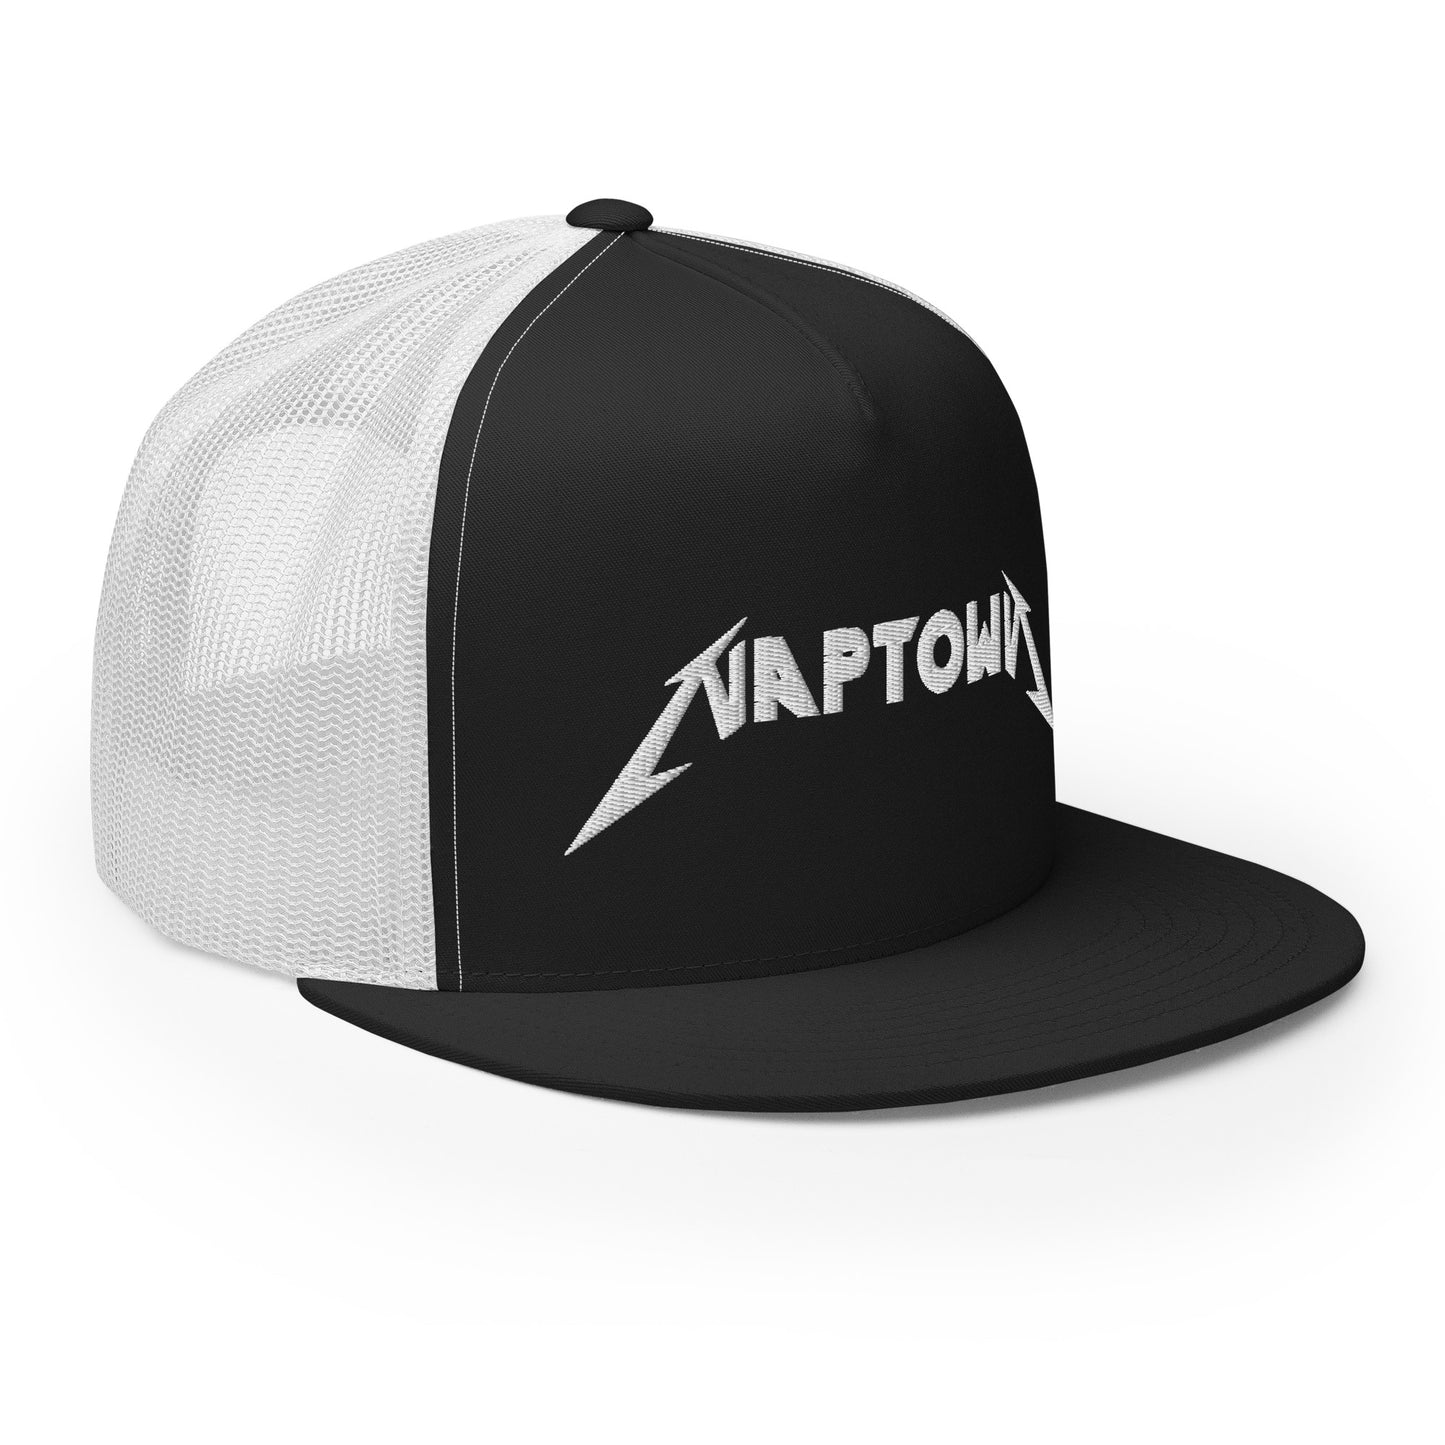 NAPTOWN - Trucker Cap